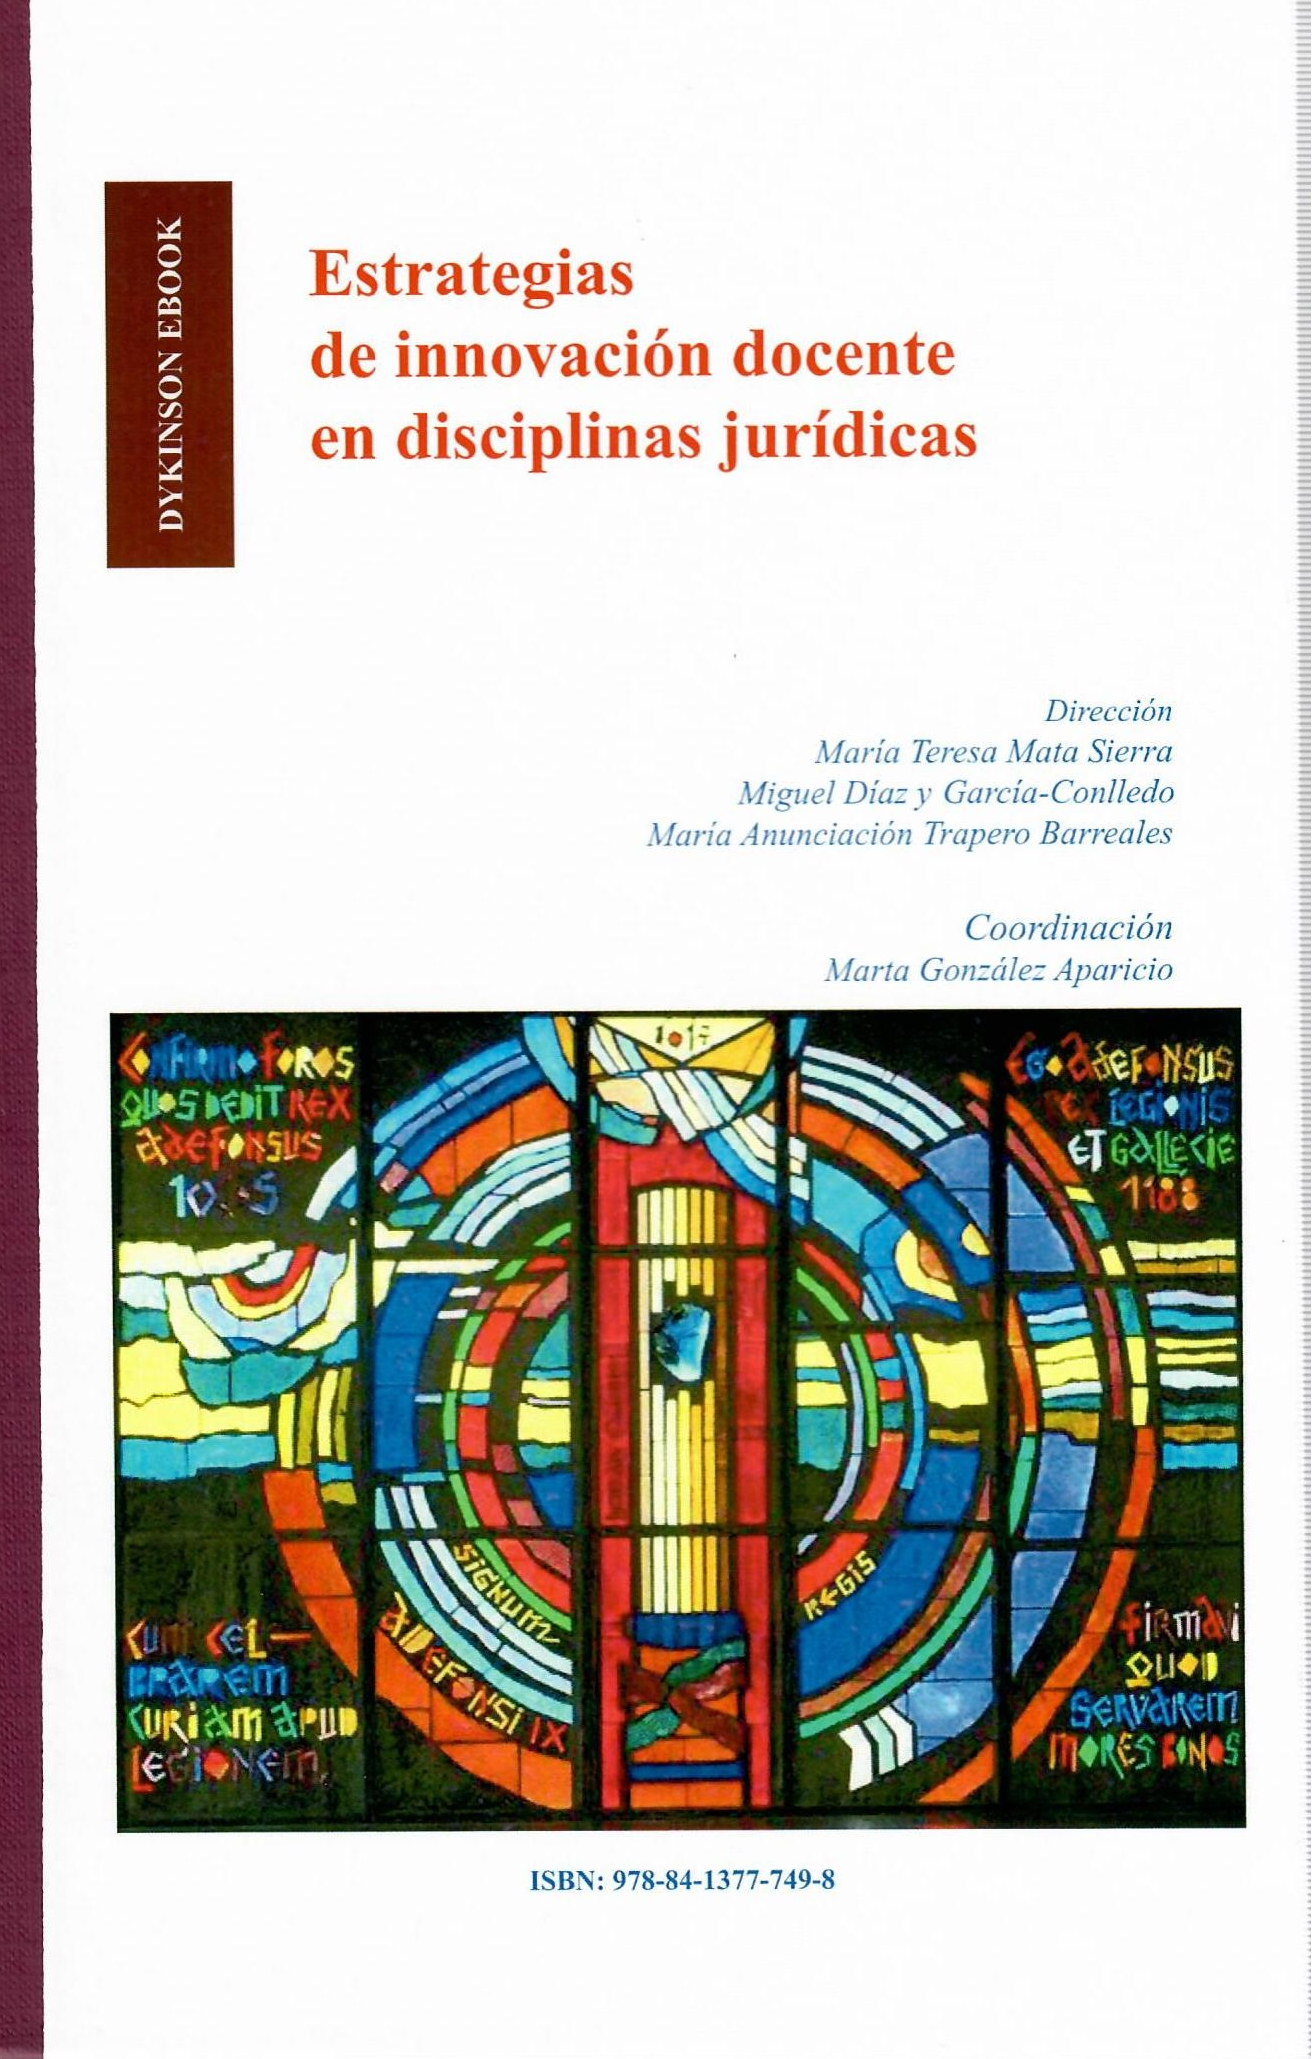 Imagen de portada del libro Estrategias de innovación docente en disciplinas jurídicas